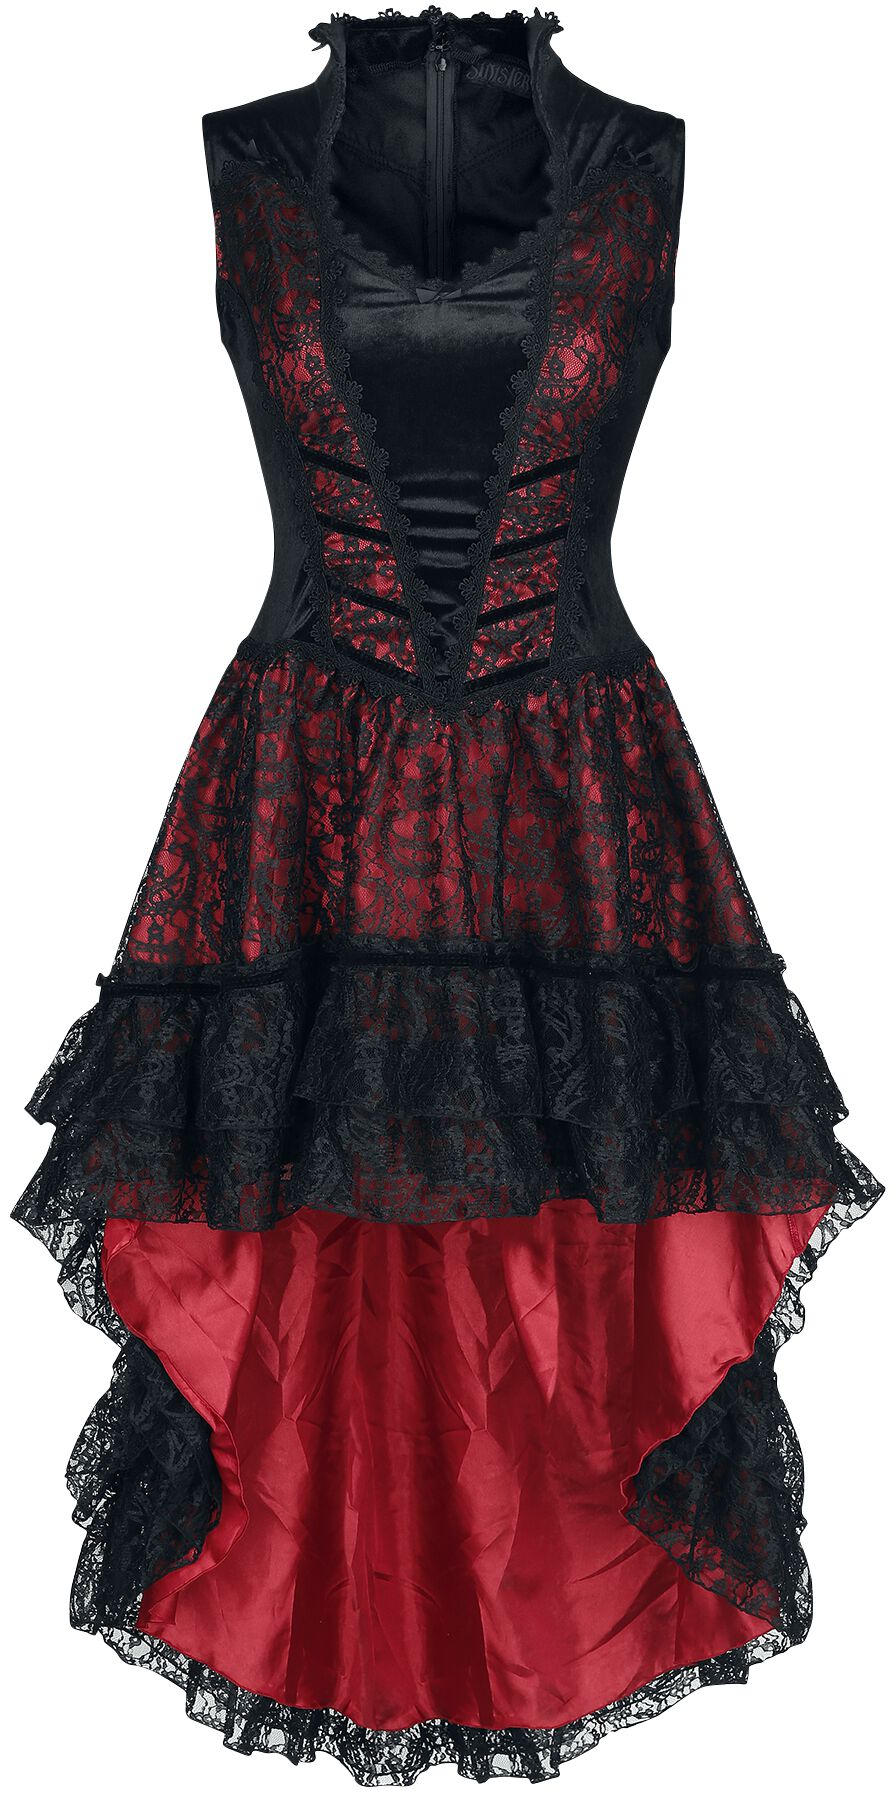 Sinister Gothic Gothic Dress Mittellanges Kleid schwarz rot in XS